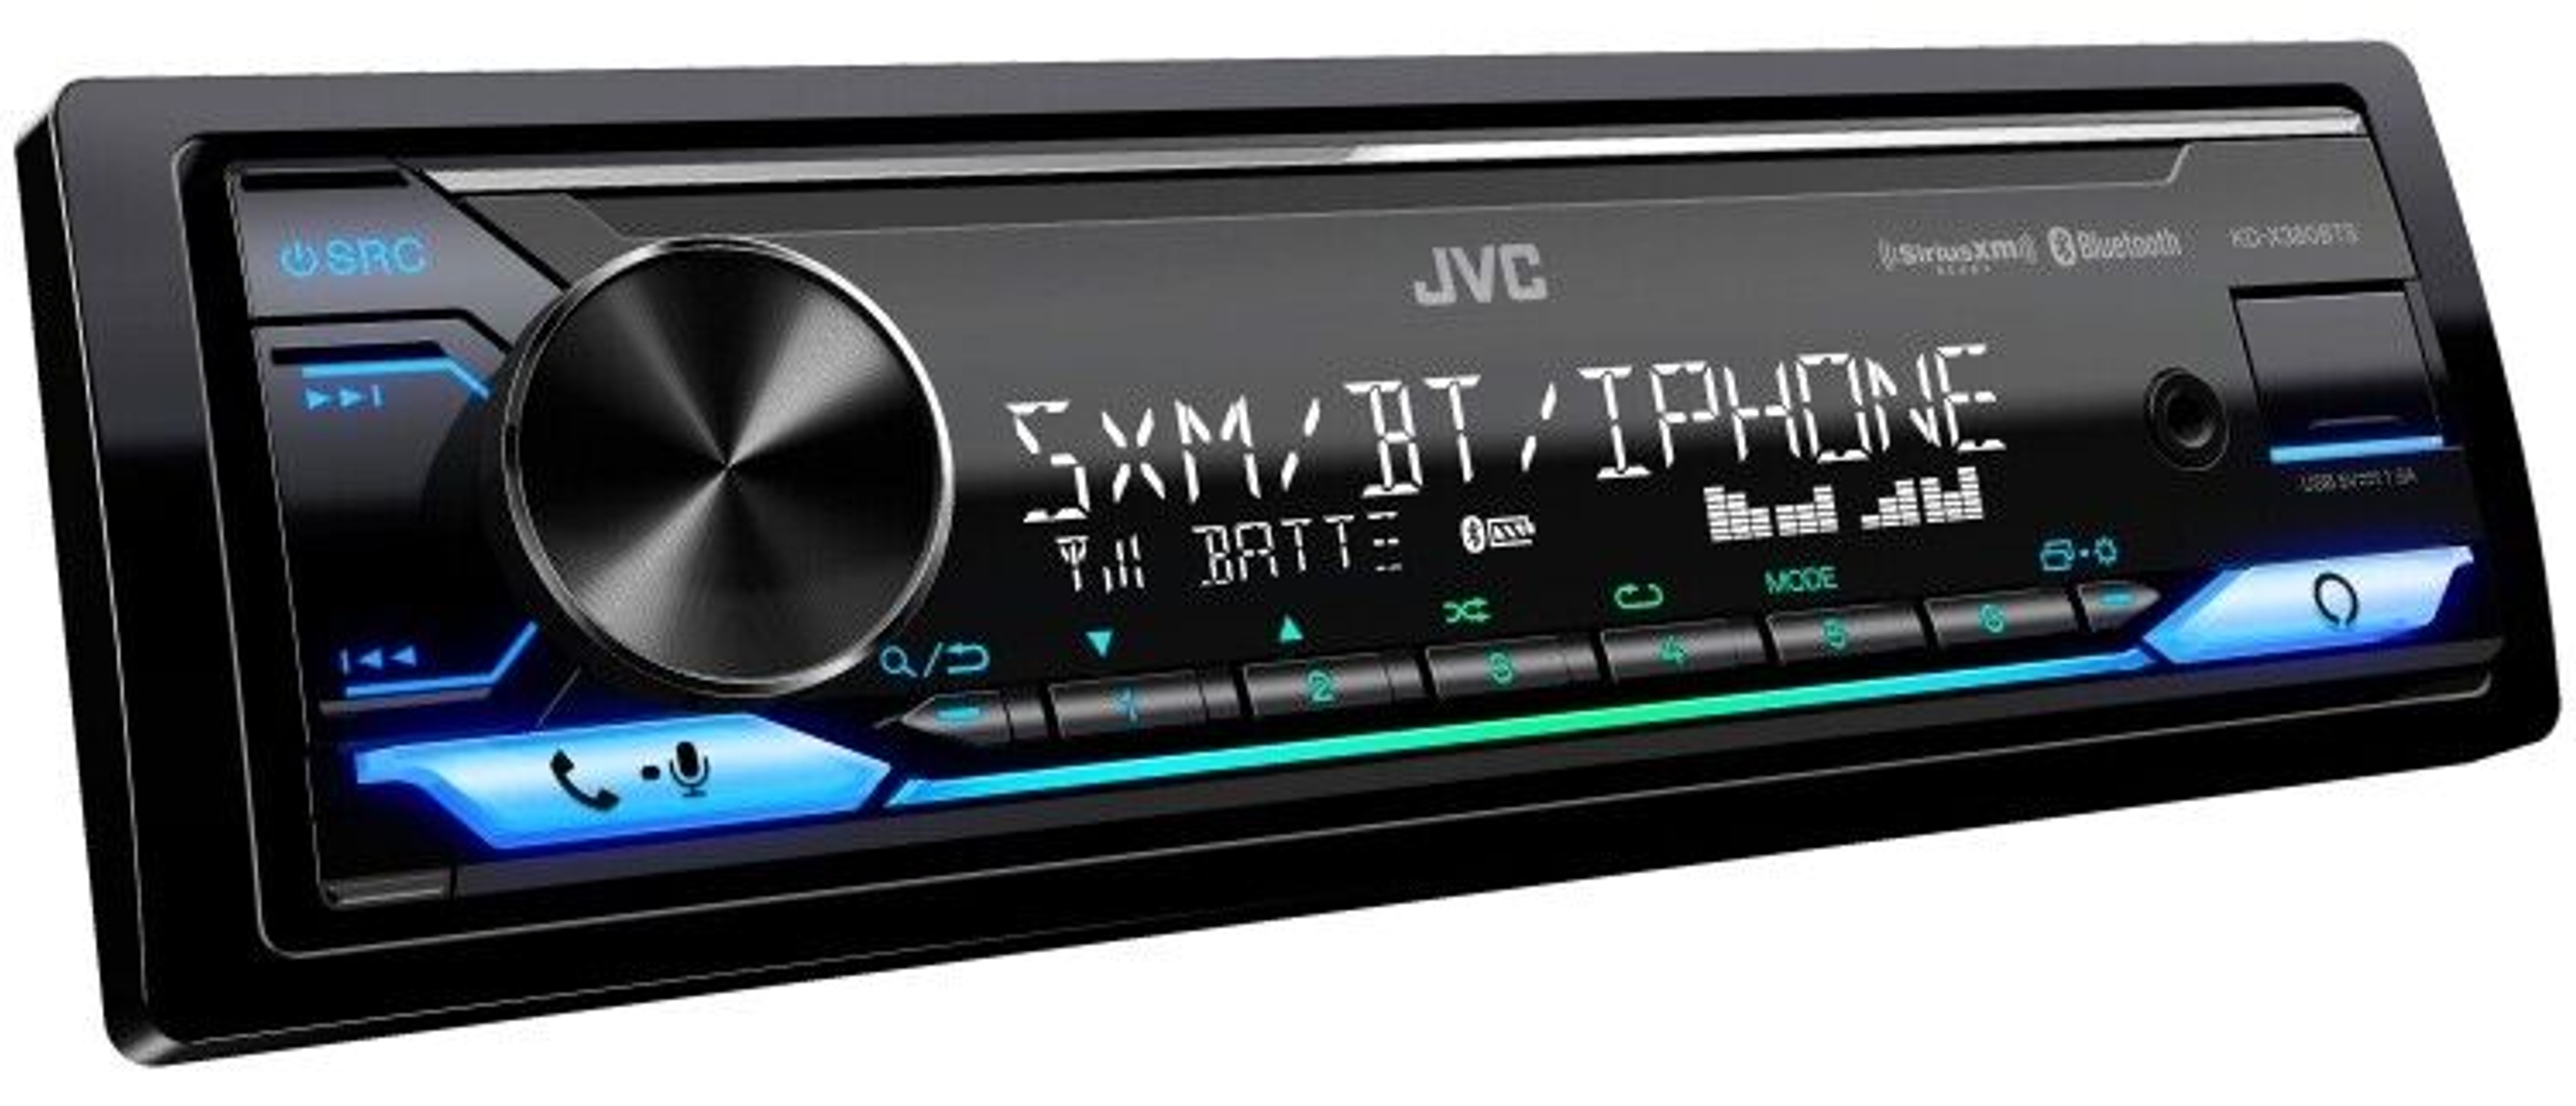 Jvc Kd-x380bts Digital Media Receiver Featuring Bluetooth/usb